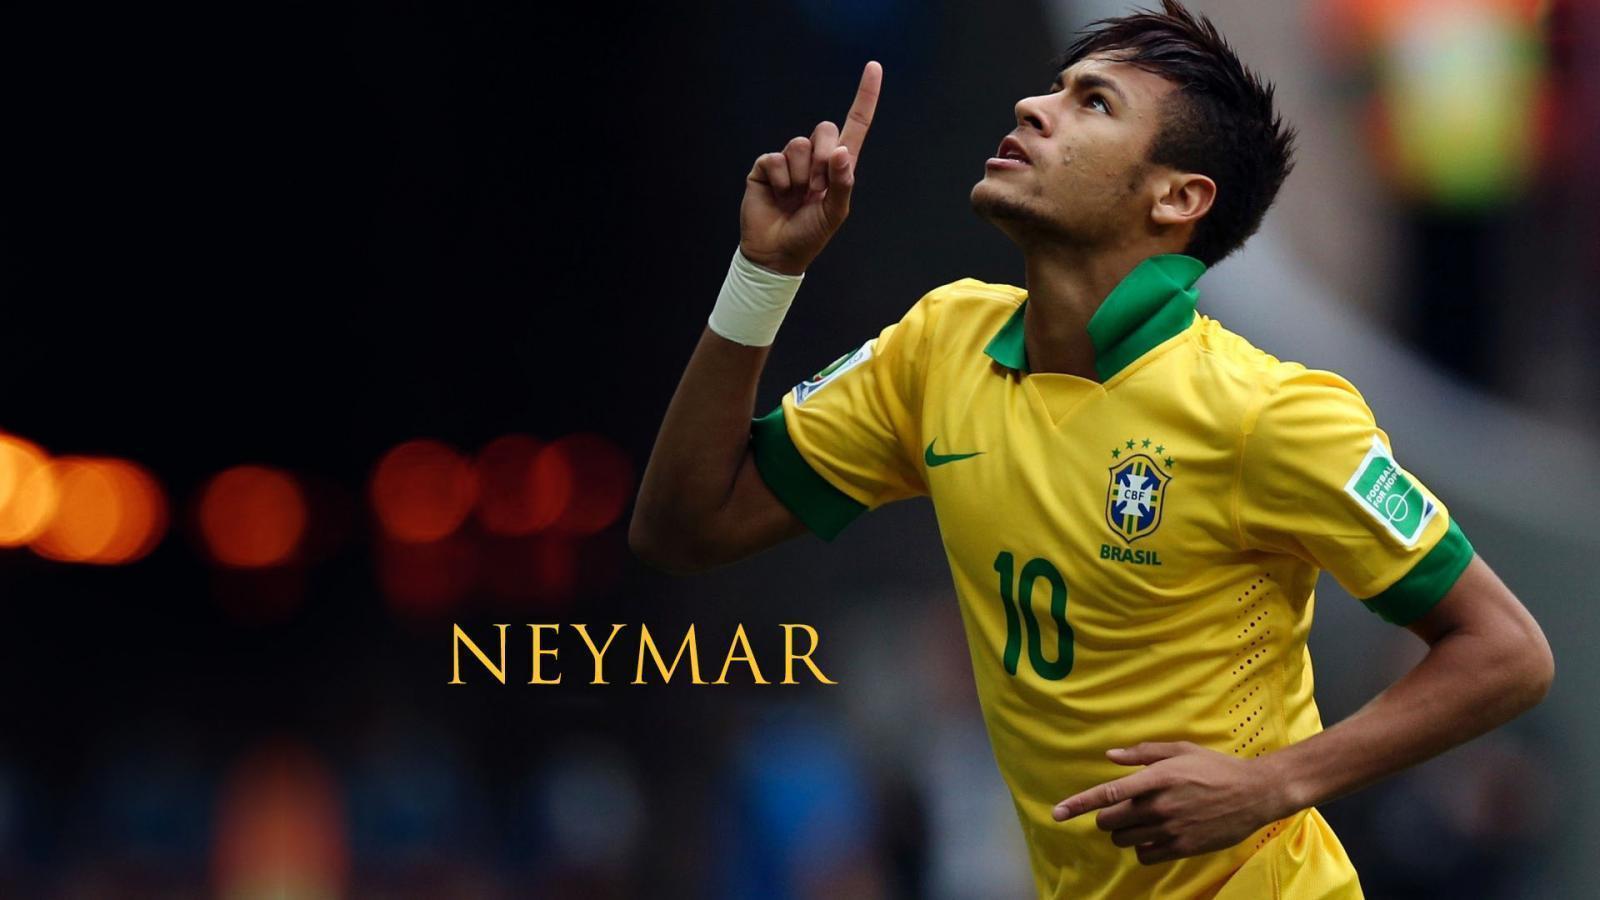 Neymar Skill Brazil Wallpaper, Size: 1600x900. AmazingPict.com